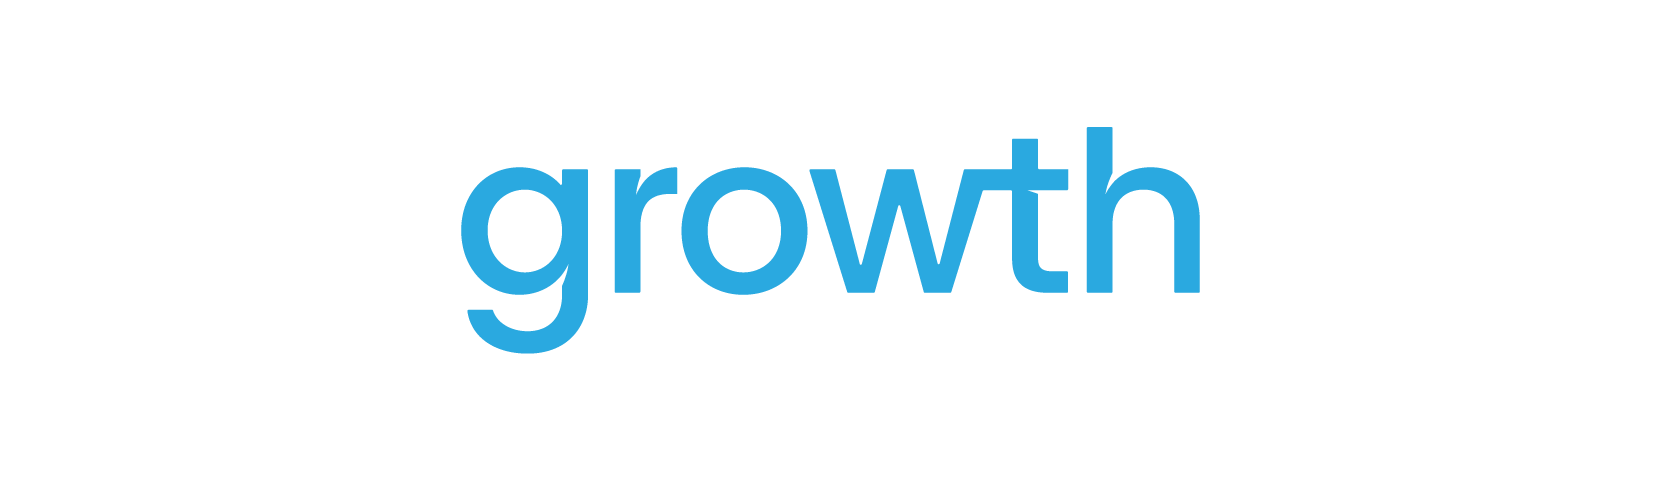 GrowthVue_Logo_Full_White